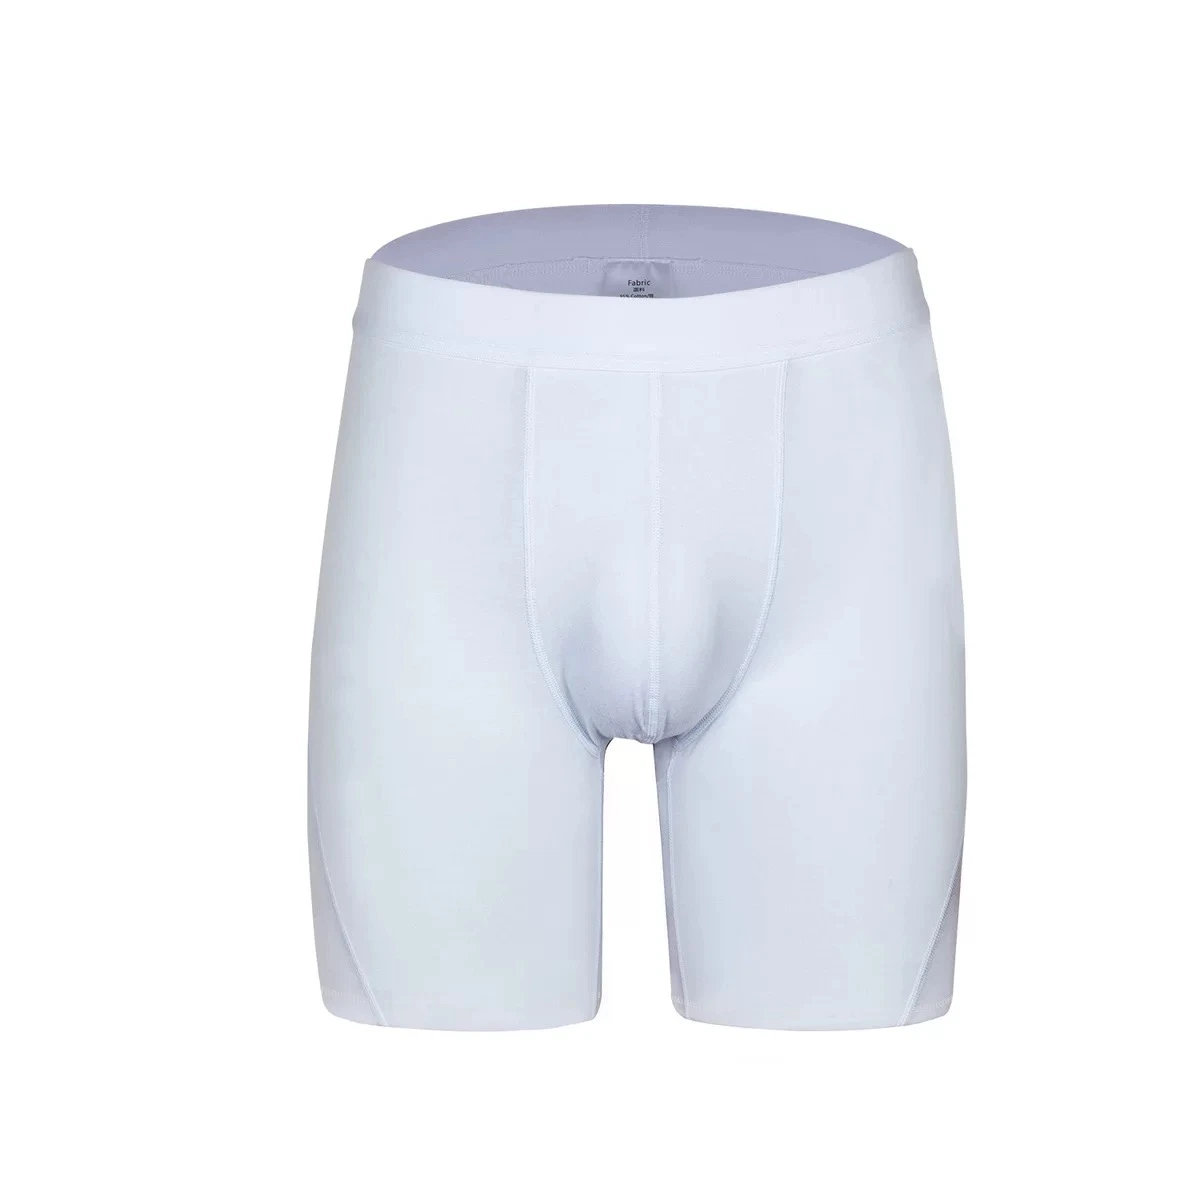 Solid Long Leg Cotton Men Boxer Short Comfortable Underwear